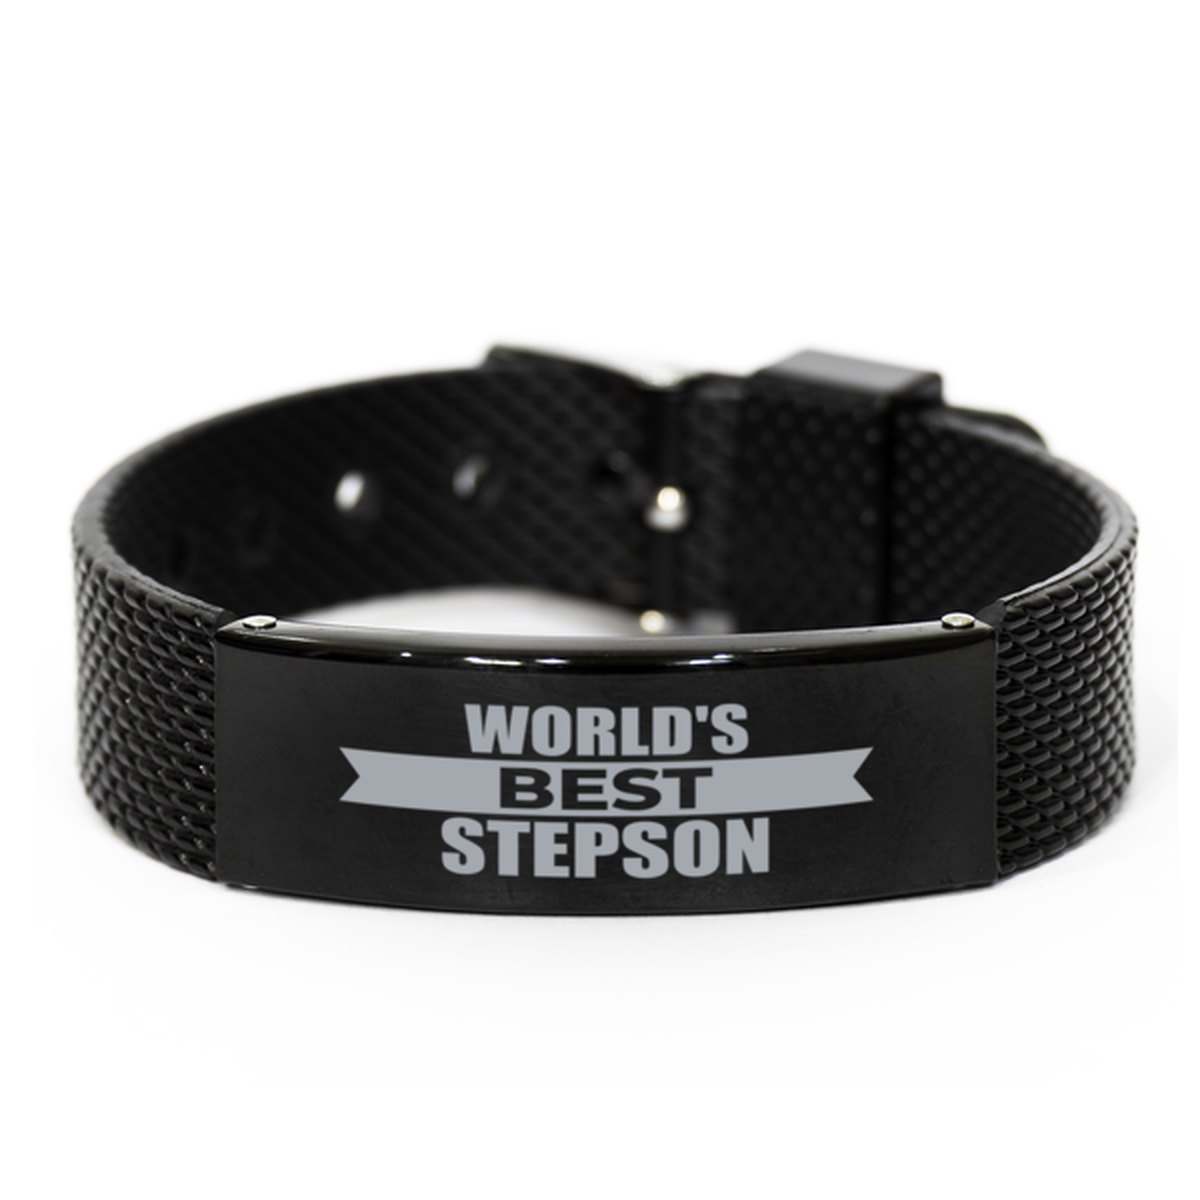 World's Best Stepson Gifts, Gag Engraved Bracelet For Stepson, Best Family Gifts For Men